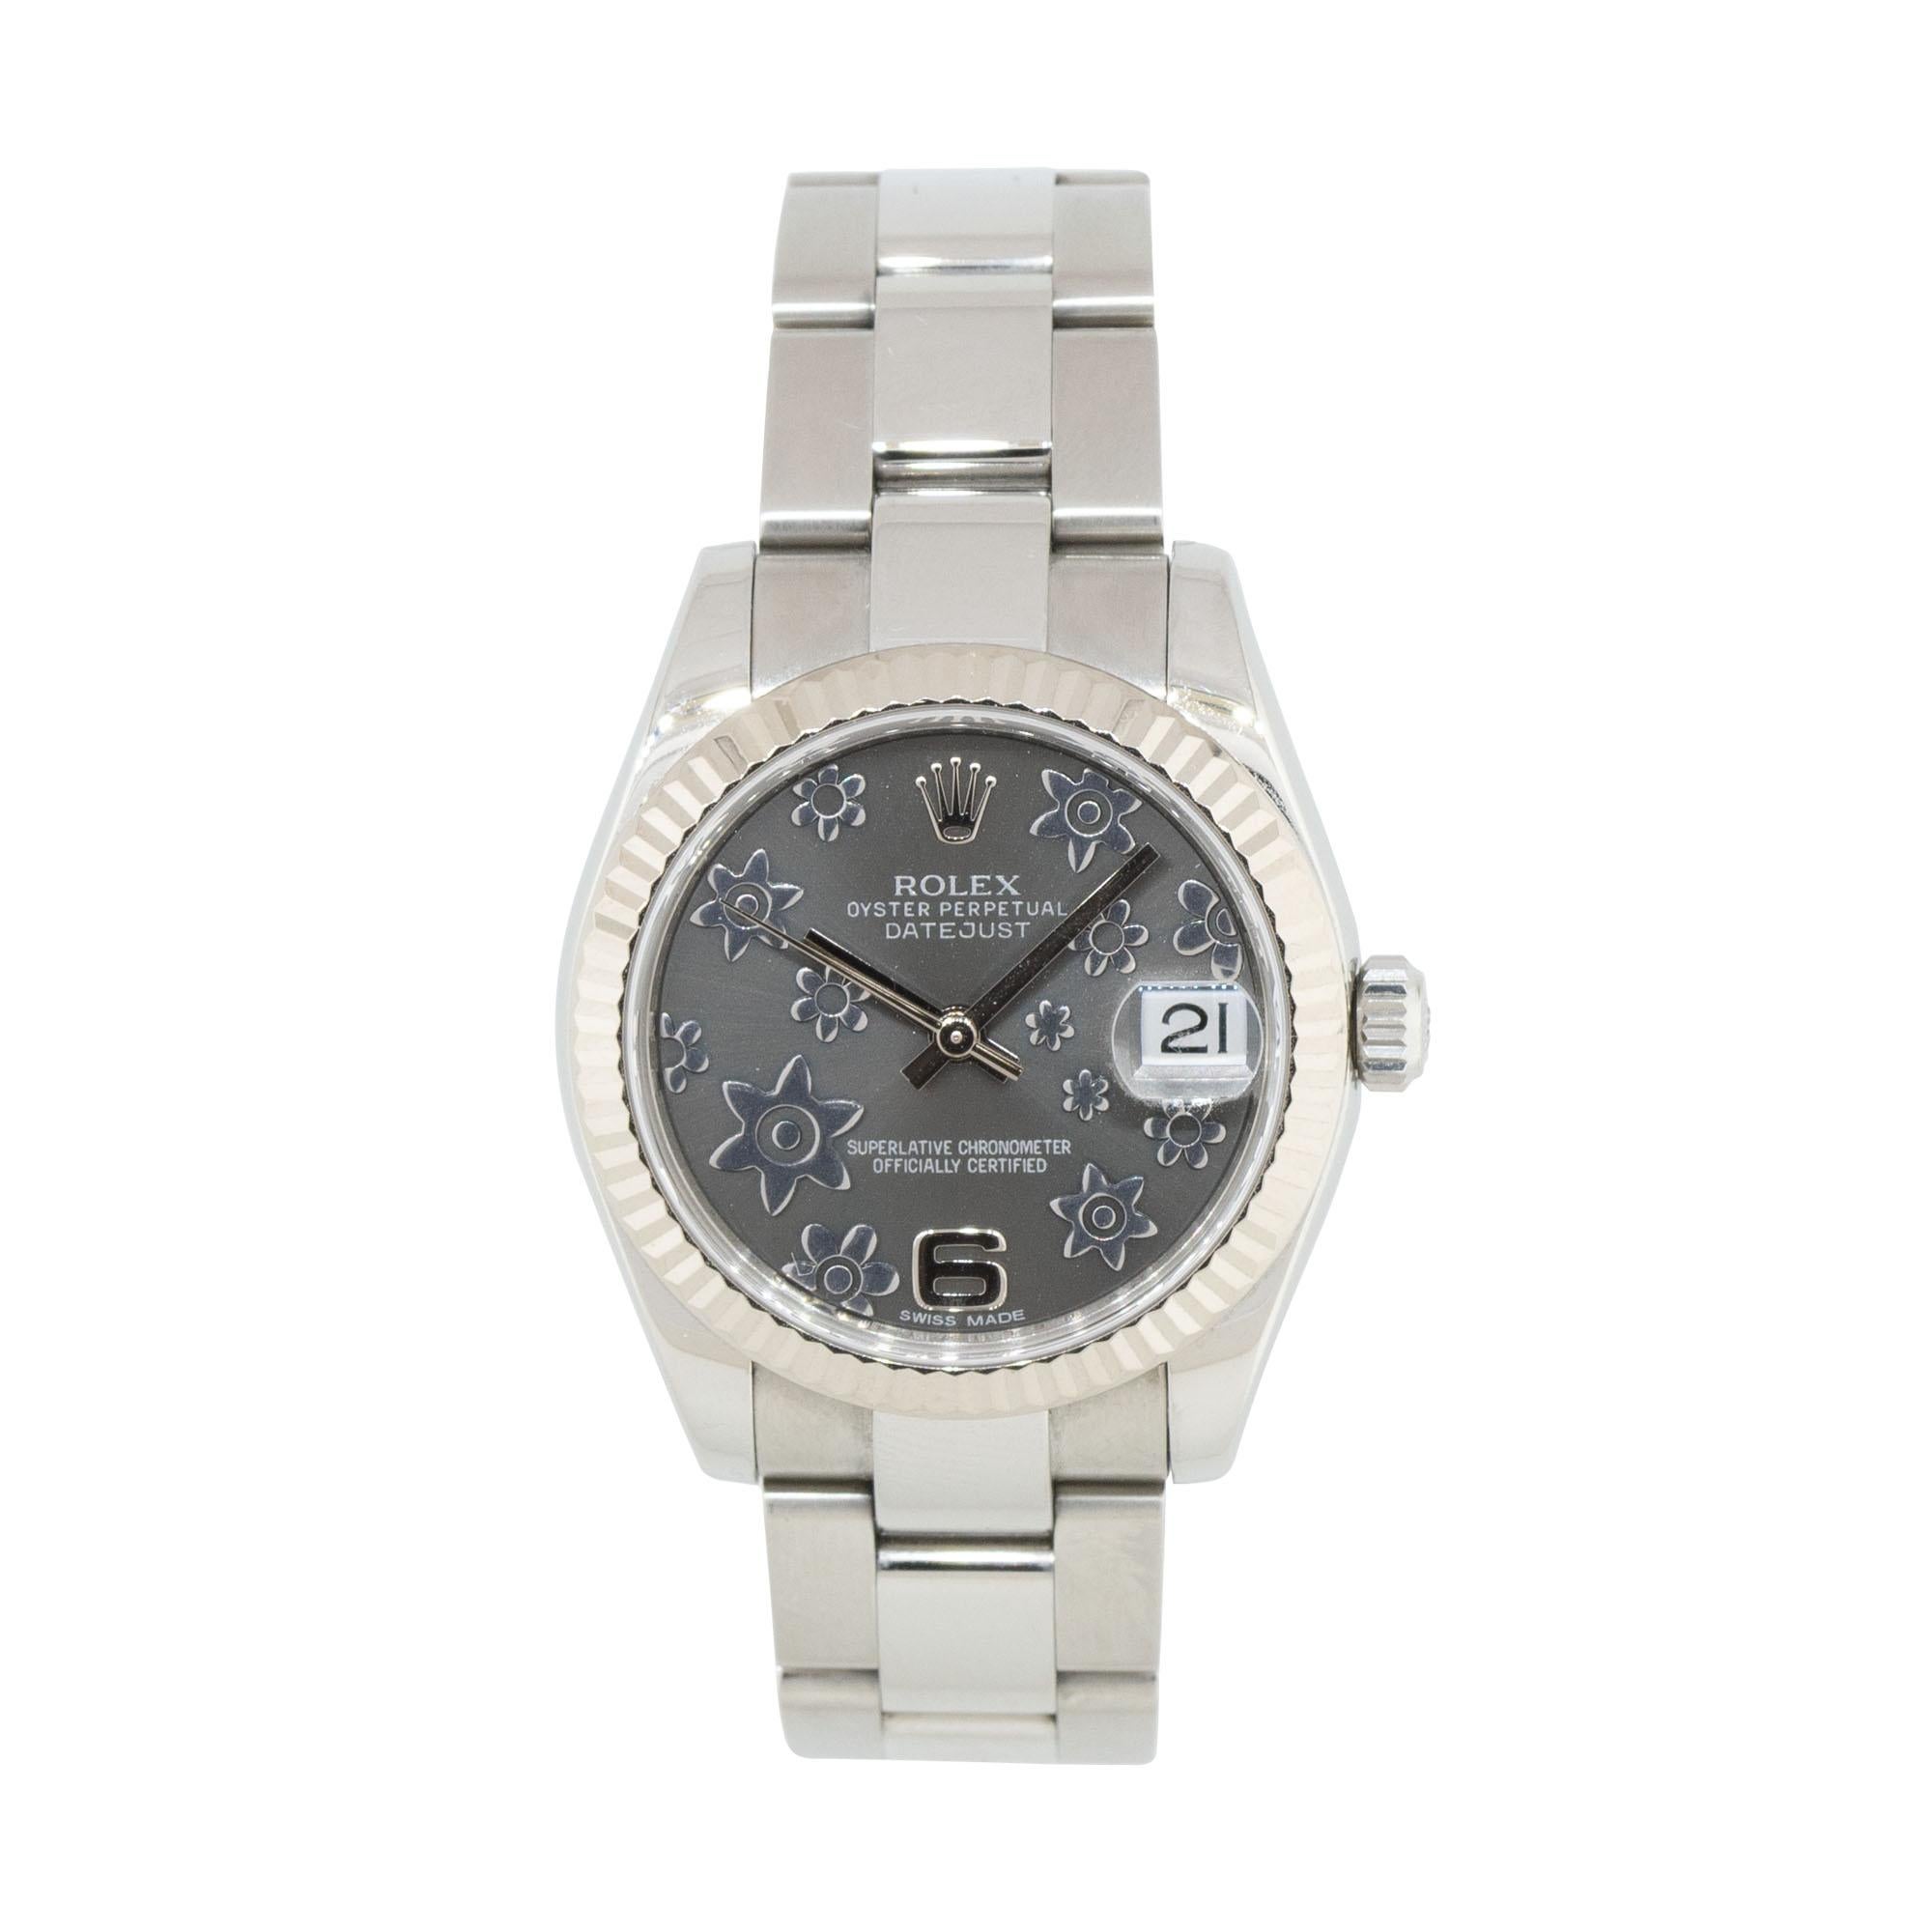 Rolex 178274 Datejust 31mm Edelstahl-Uhr mit geblümtem Zifferblatt
Die Rolex 178274 Datejust mit geblümtem Zifferblatt verkörpert zeitlose Eleganz und unverwechselbares Design und ist damit eine begehrte Wahl für Frauen, die bei ihrem Zeitmesser